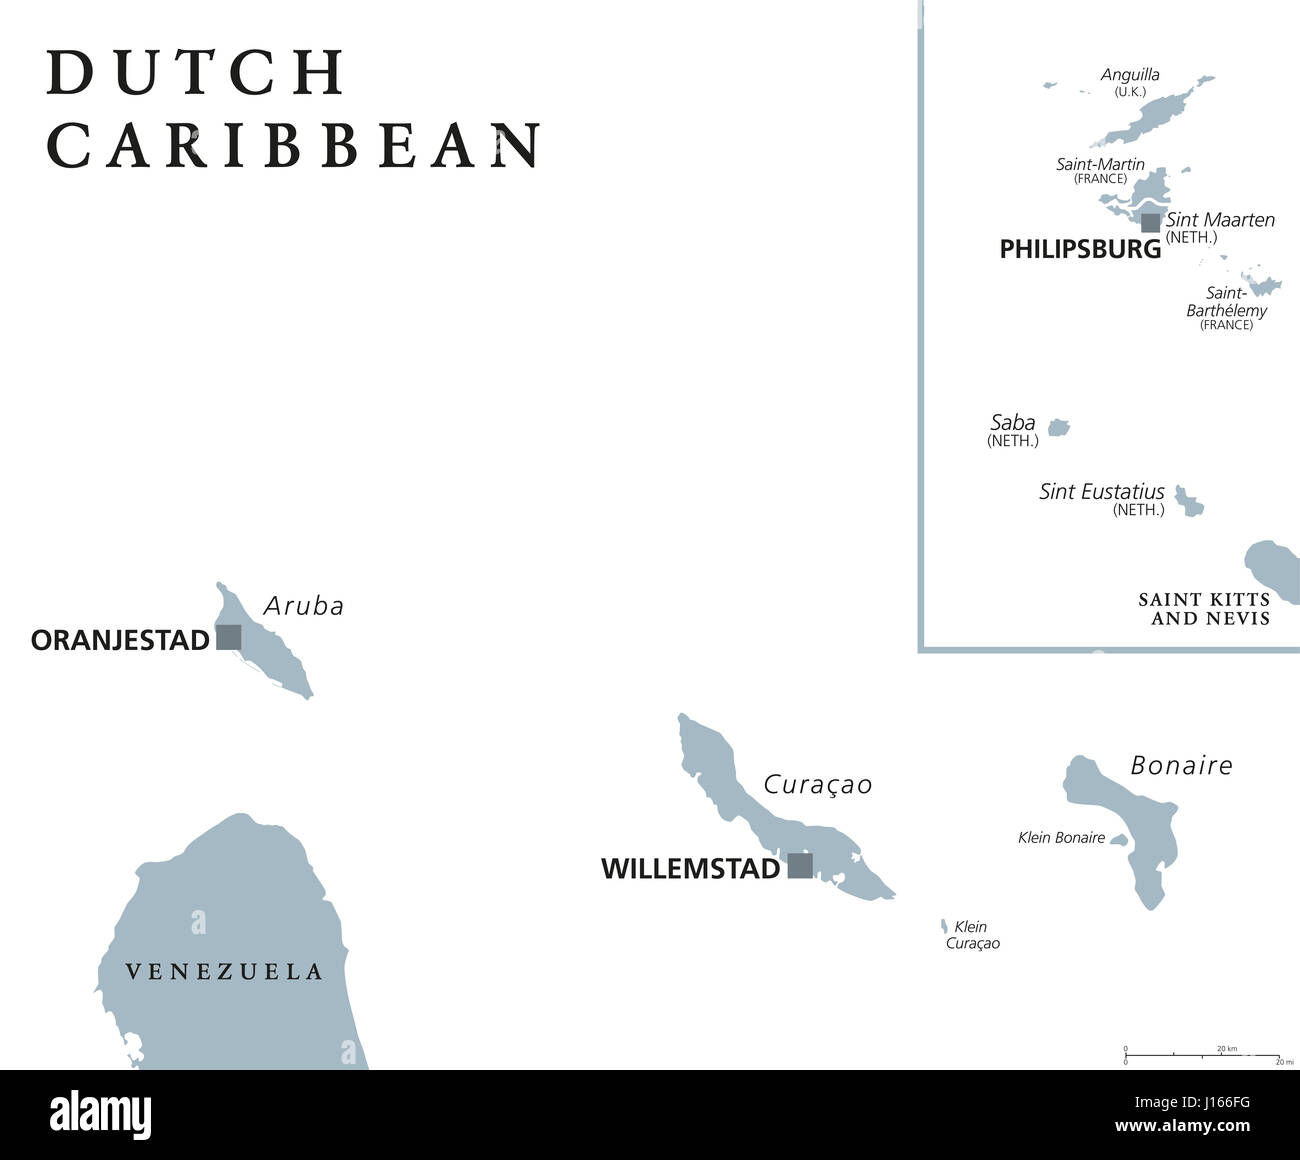 Carte politique des Caraïbes néerlandaises avec Aruba, Curaçao, Bonaire, Sint Maarten, Saba et Saint-Eustache. Anciens Pays-Bas Antilles néerlandaises. Gris illustration. Banque D'Images